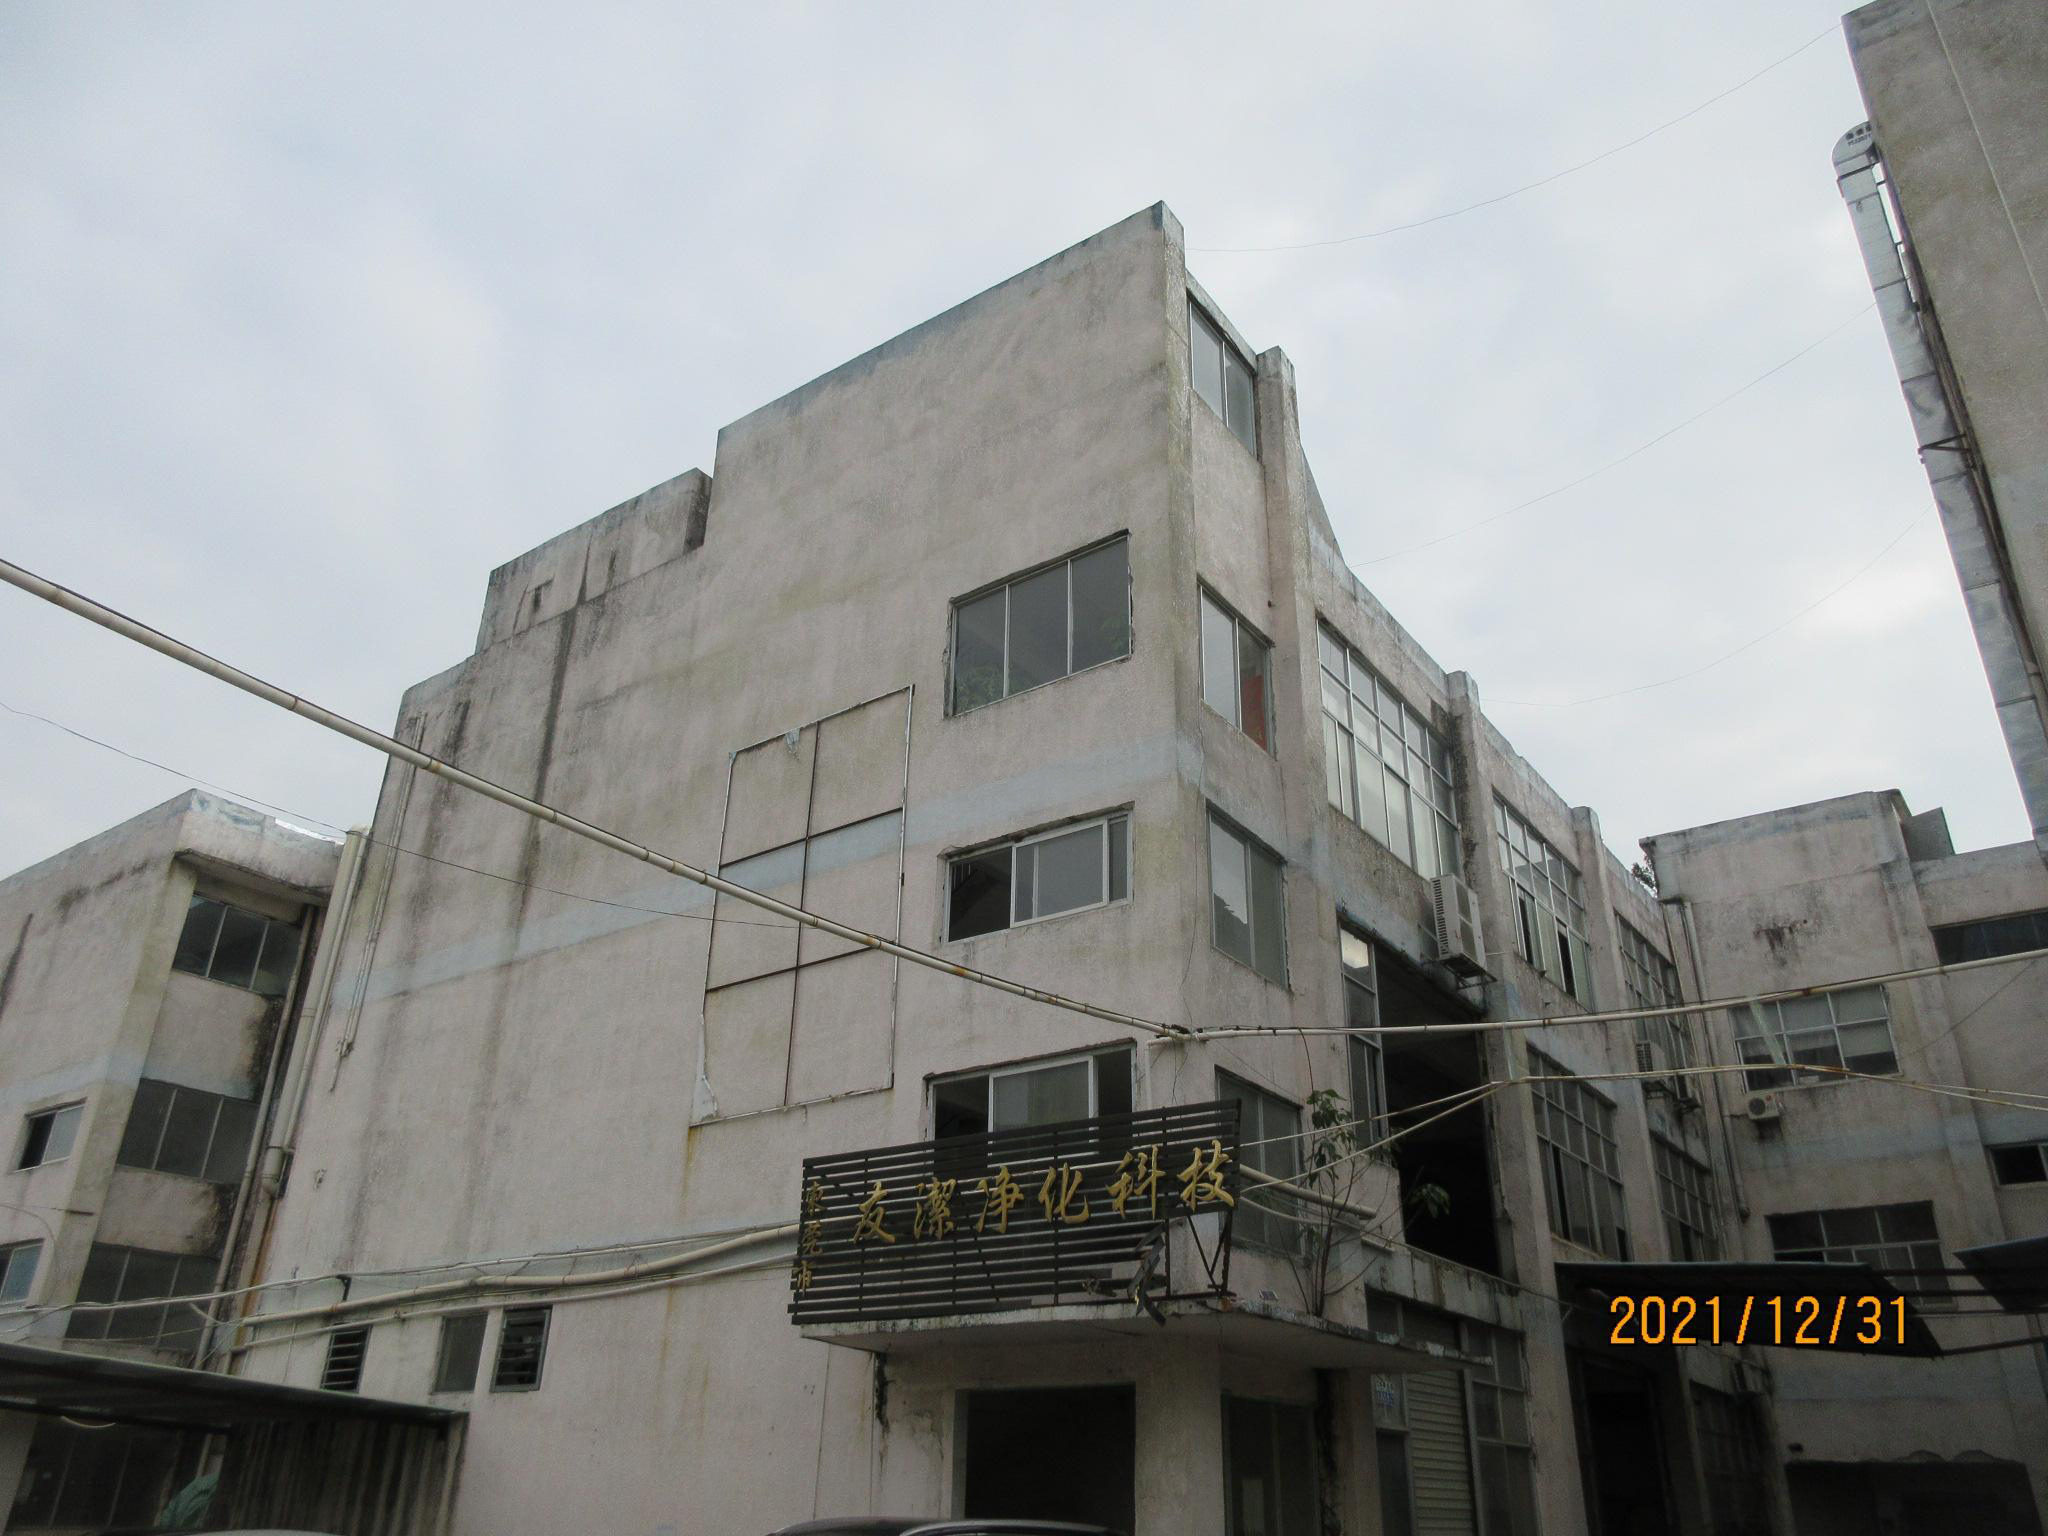   Dongguan Youjie Purification Technology Co., Ltd